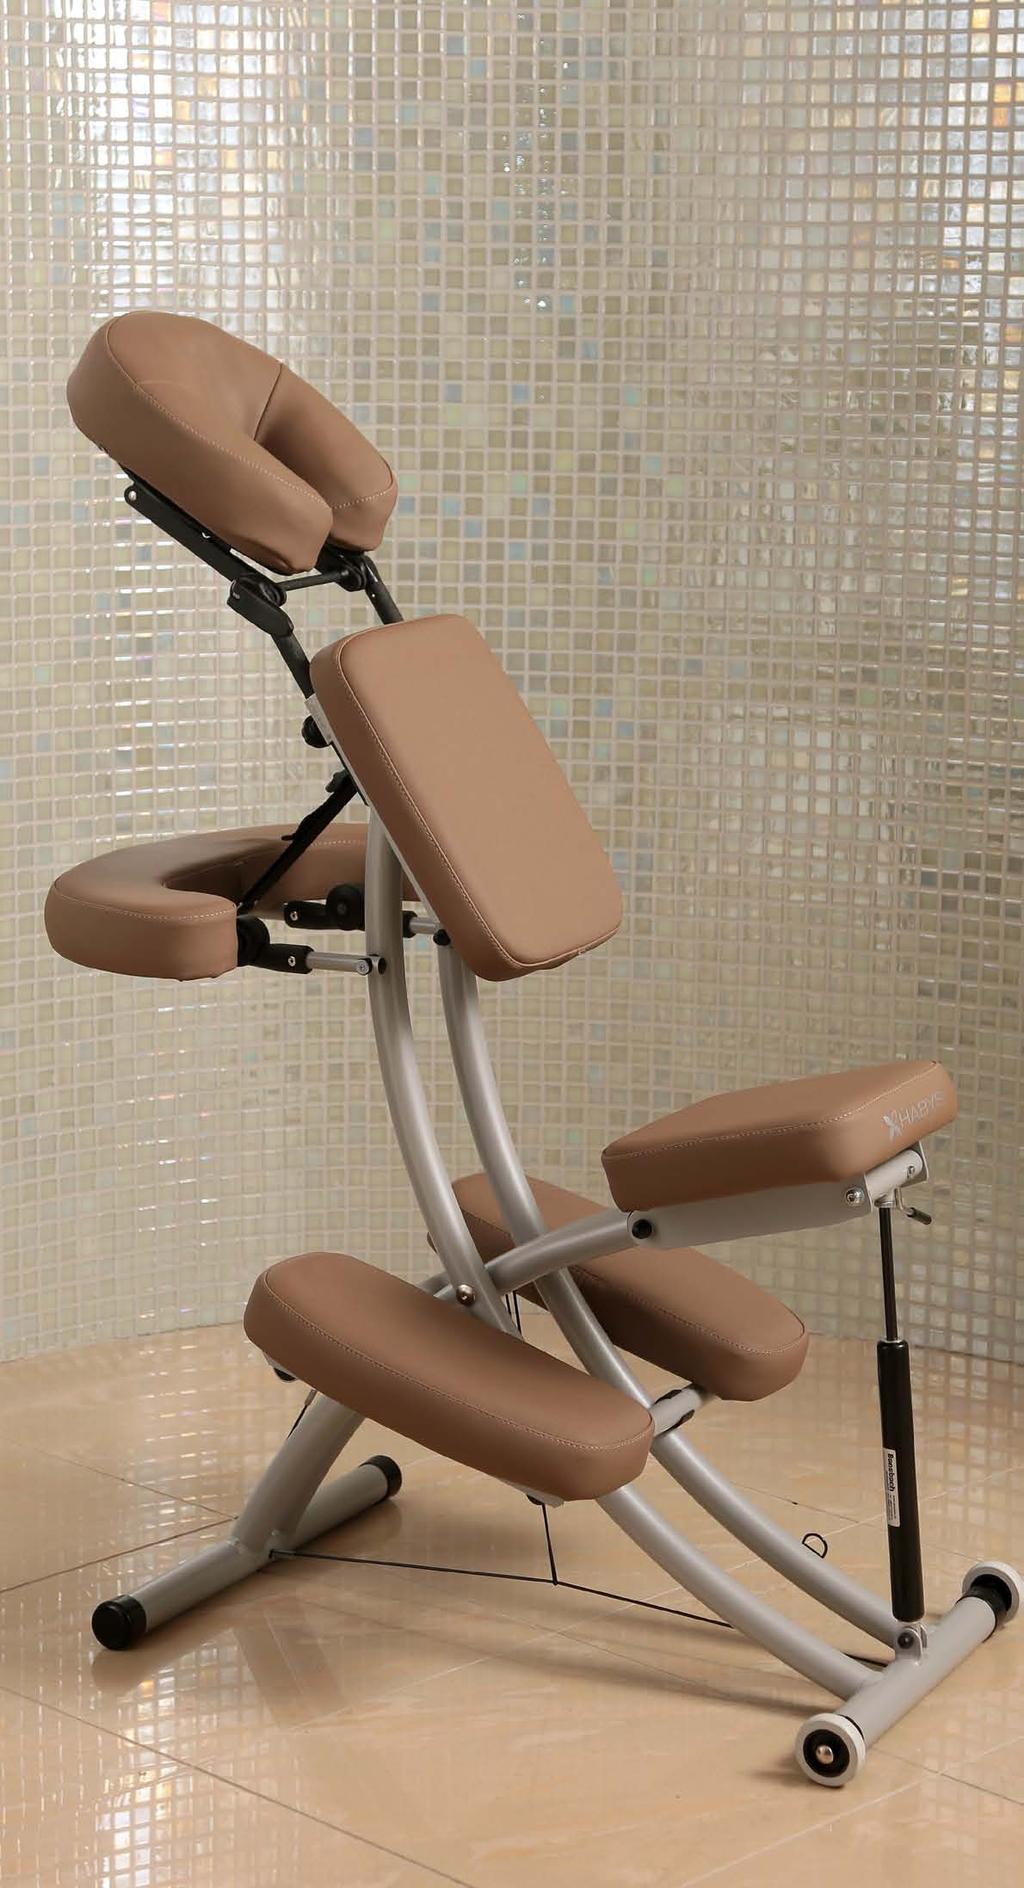 Wygodne i ergonomiczne krzesło o nowoczesnej, wytrzymałej konstrukcji umożliwiające wykonanie pełnowartościowego masażu w niemal